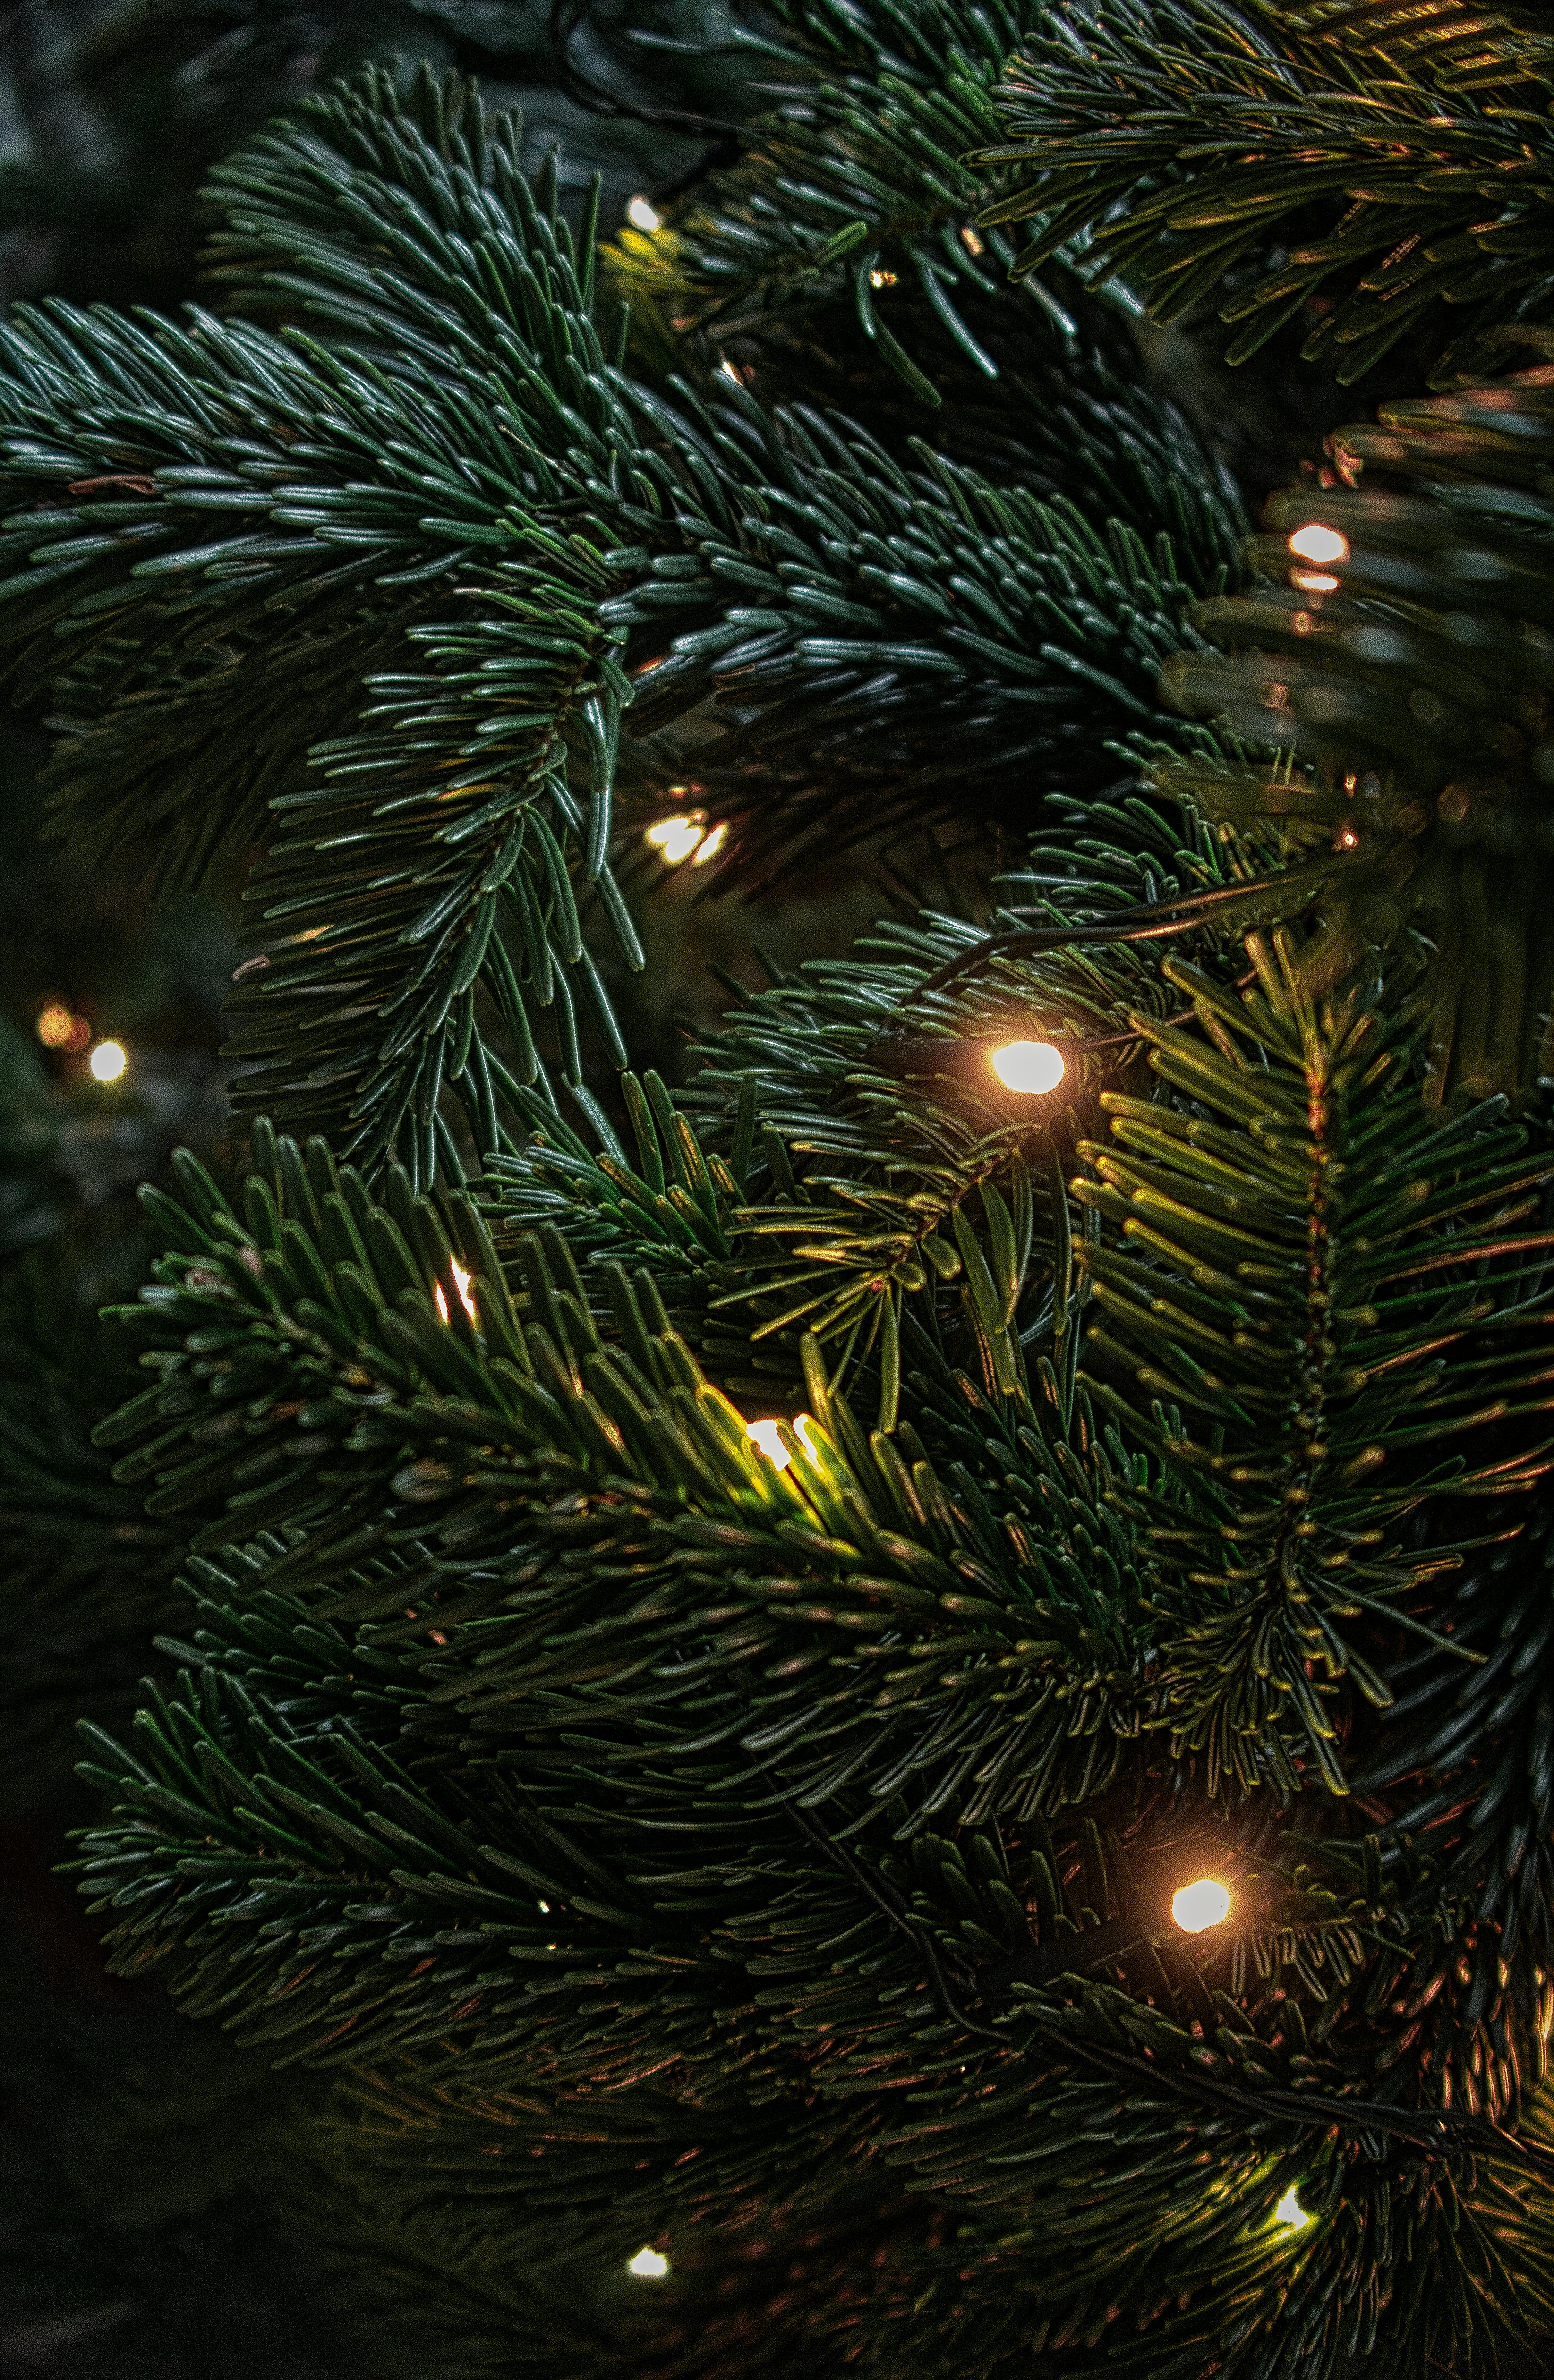 + melhores imagens de Natal · Download 100% grátis · Fotos  profissionais do Pexels